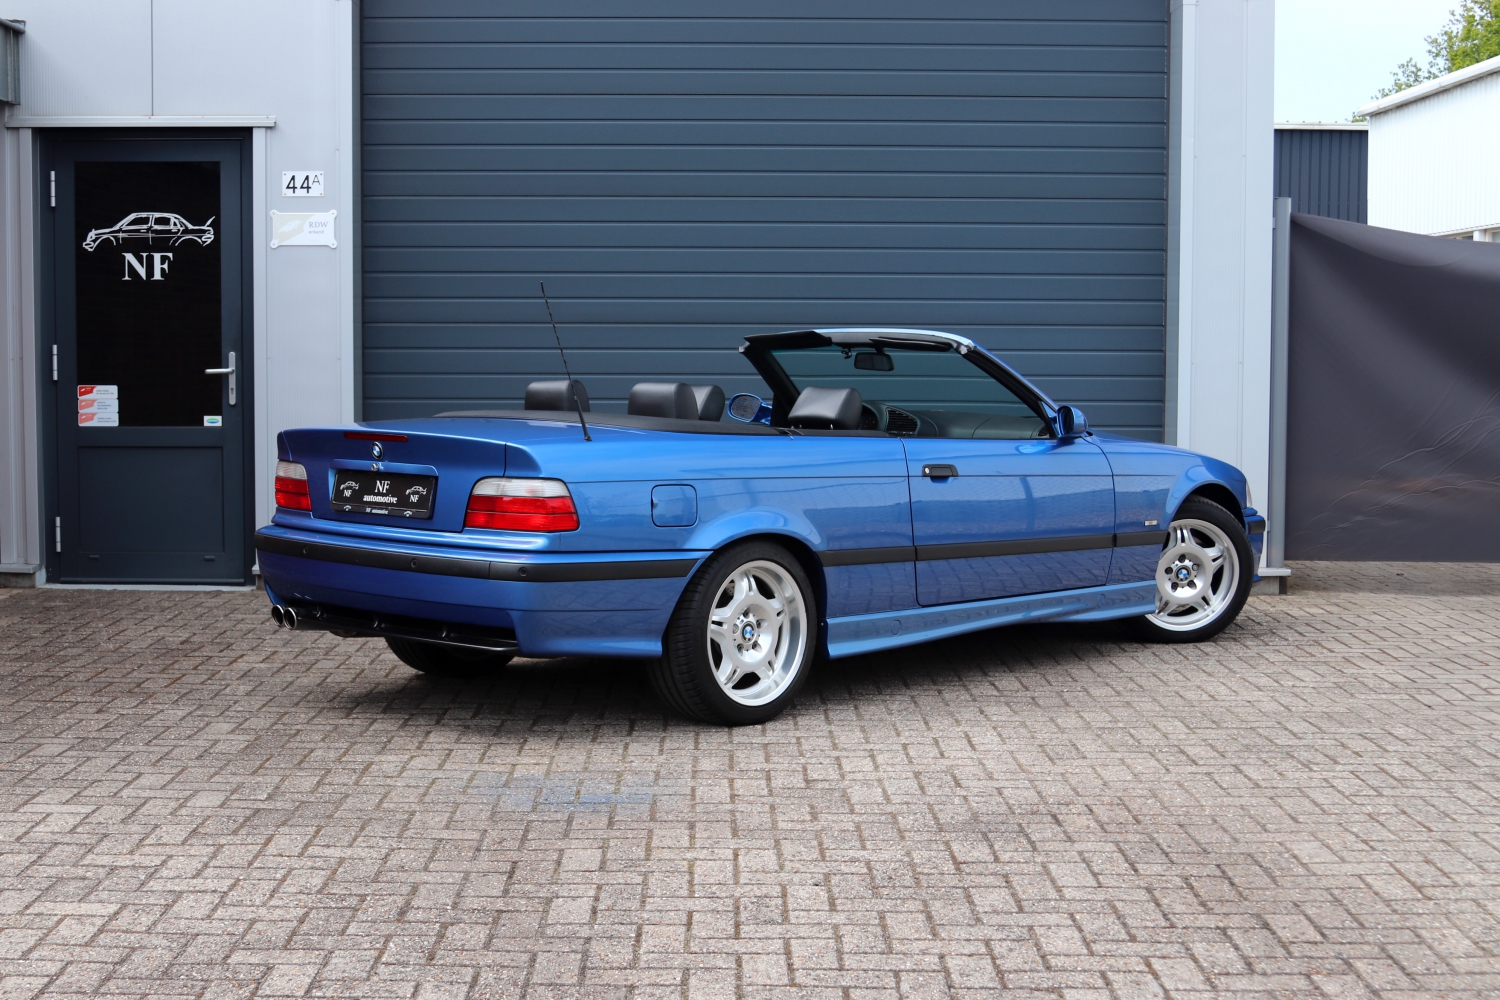 BMW-M3-Cabriolet-3.2-E36-1997-SBNJ95-005.JPG